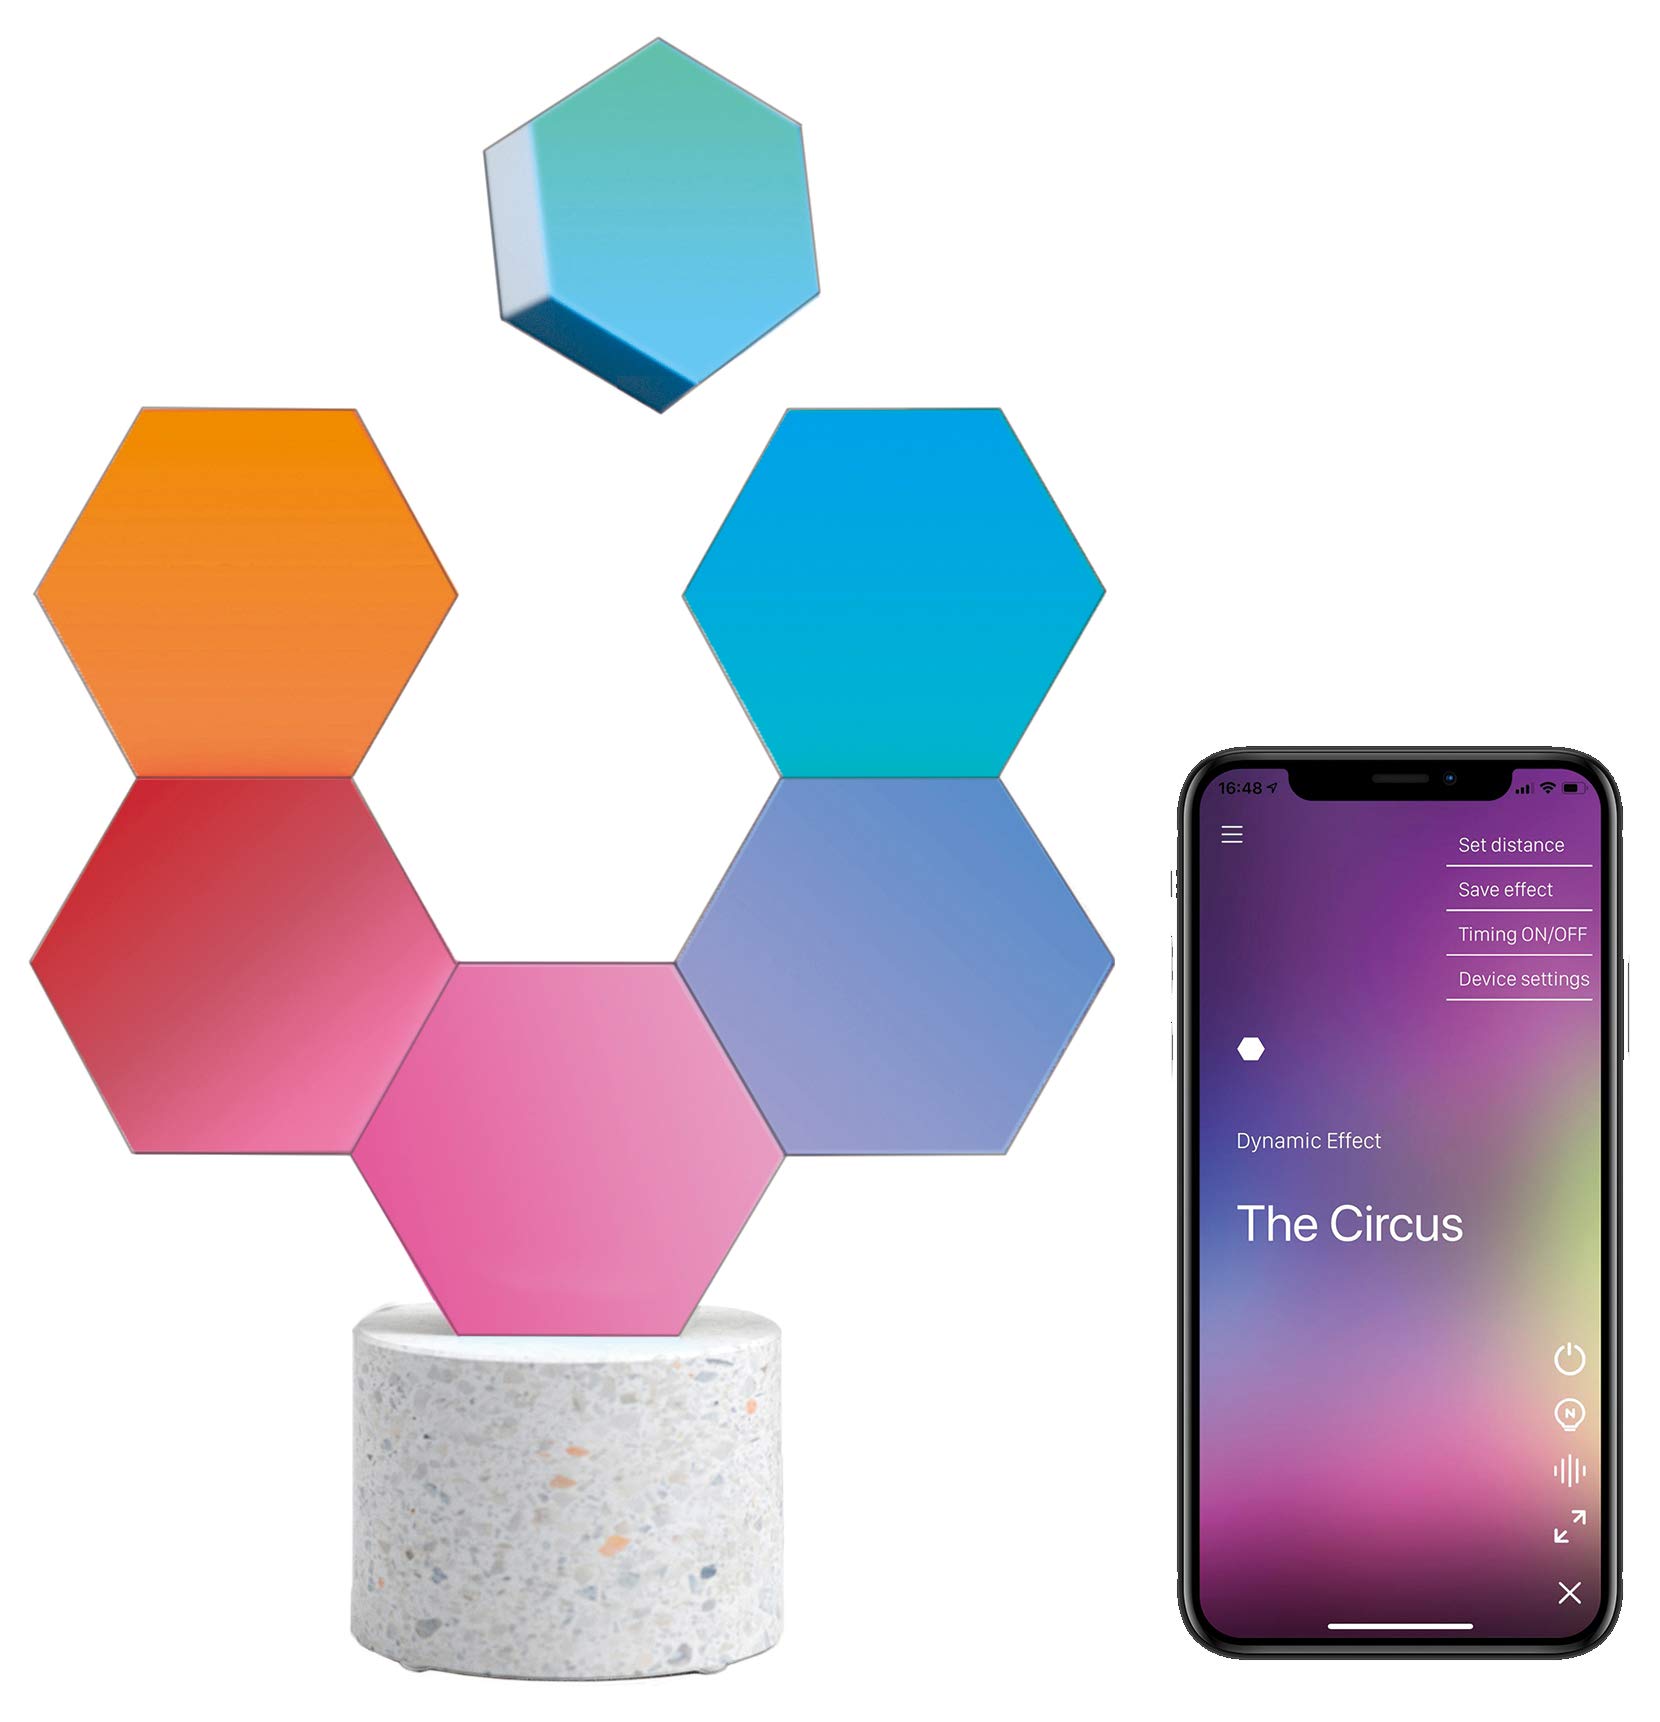 Cololight PRO Lichtsystem - Steuerung per App (Android und Apple), Alexa, Google Home, 16 Mio RGB LED Farben und Effekte, Gamingbeleuchtung zum Zusammenstecken, Stone Set mit 6 Modulen